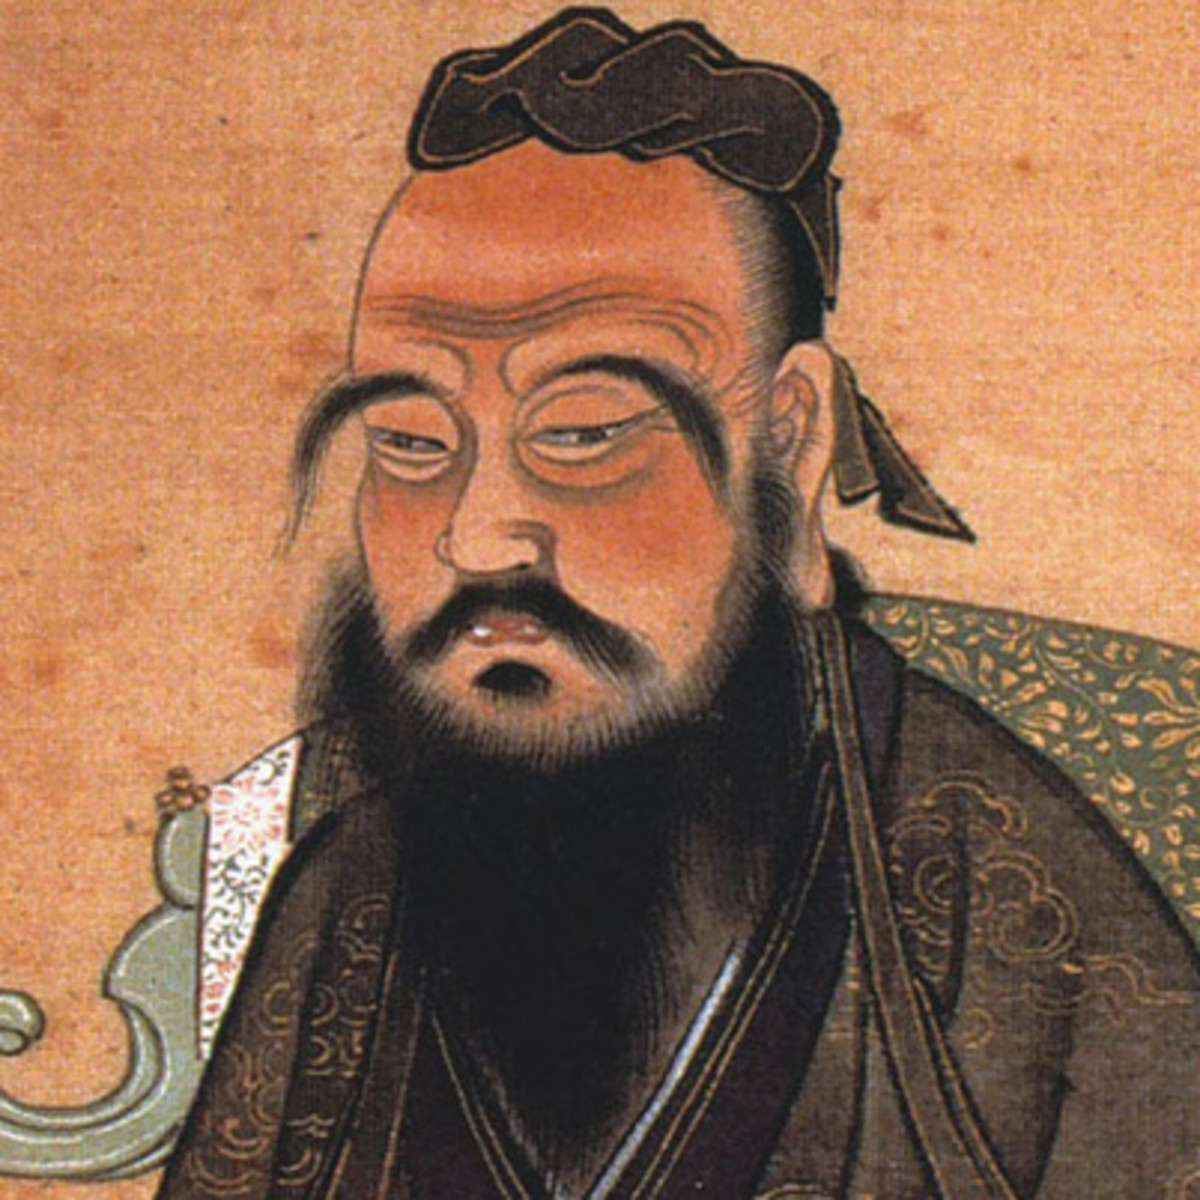 Poet Confucius